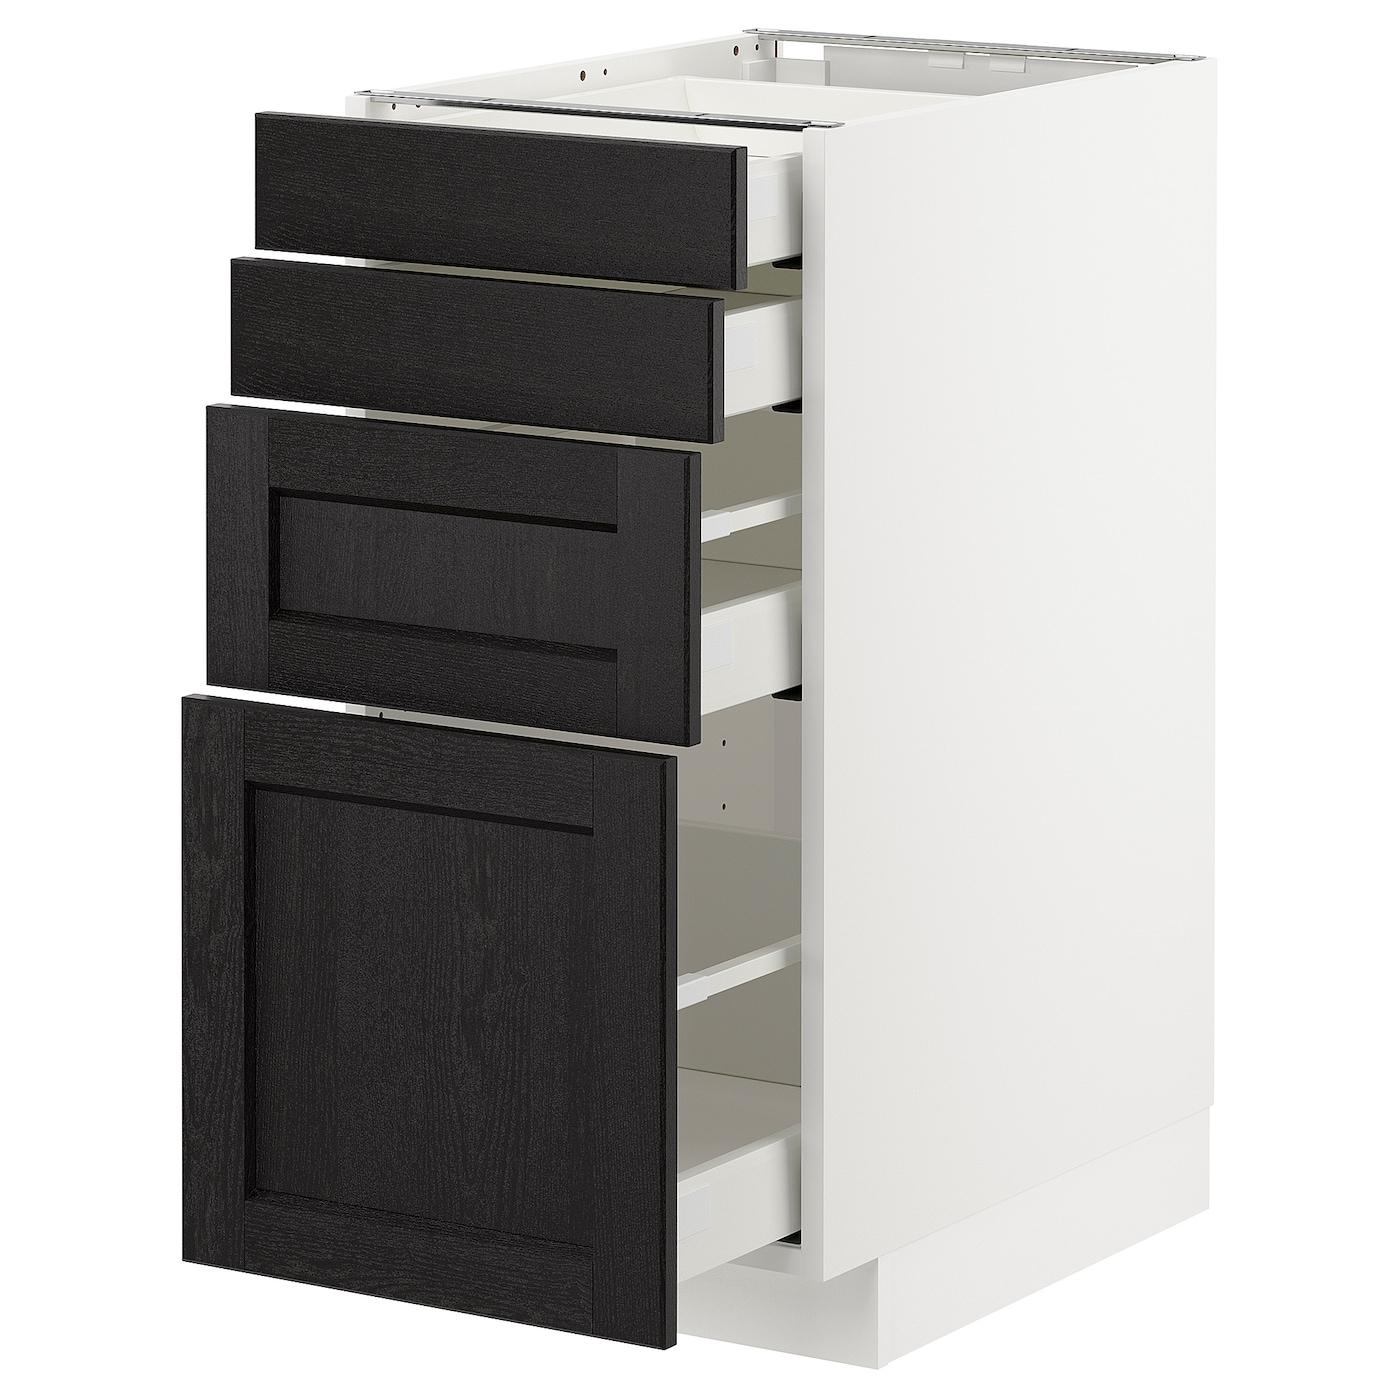 Напольный кухонный шкаф  - IKEA METOD MAXIMERA, 88x61,9x40см, черный/белый, МЕТОД МАКСИМЕРА ИКЕА